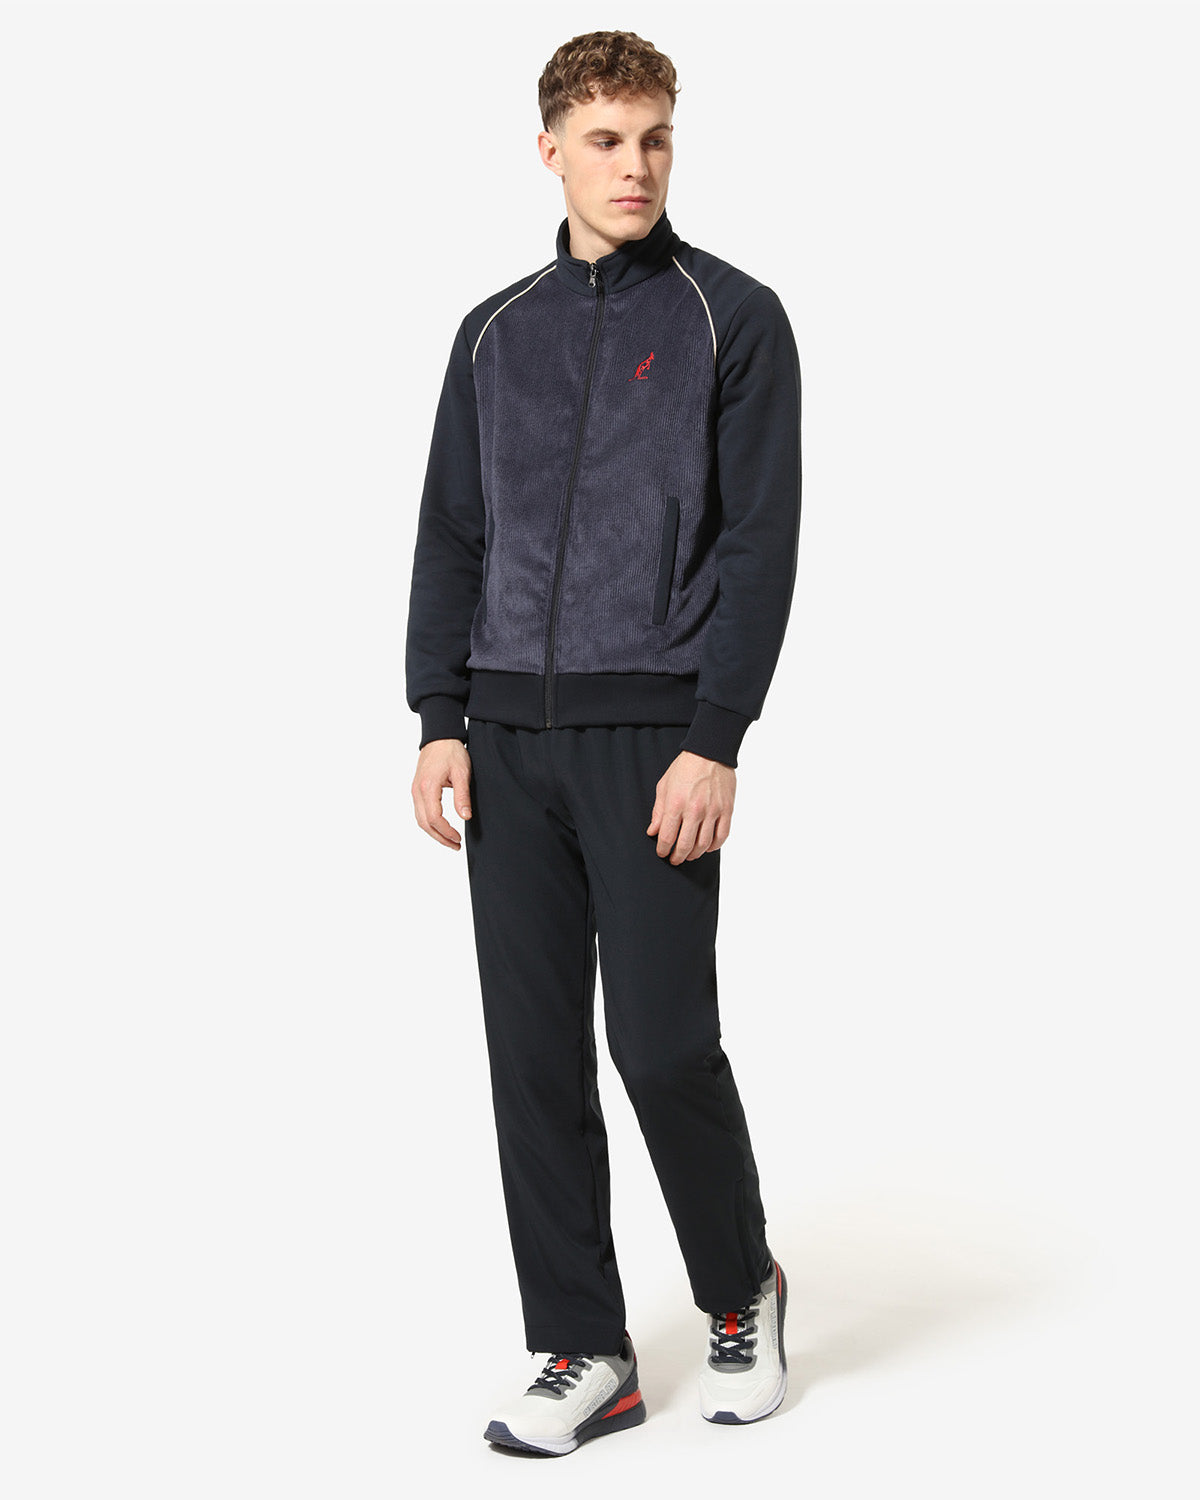 Style Track Jacket: Australian Sportswear